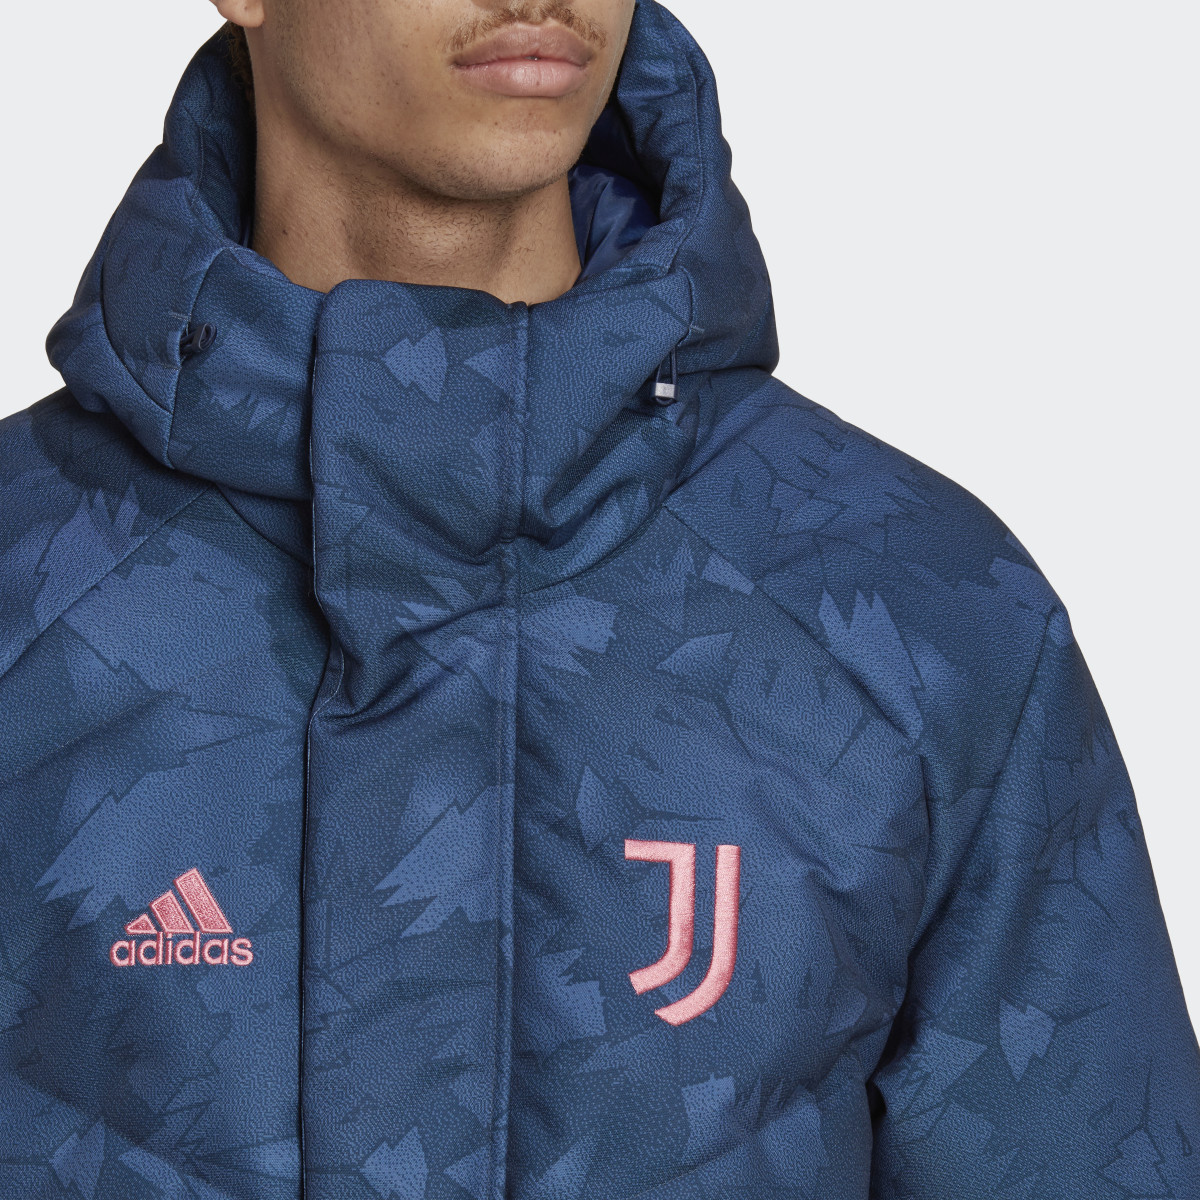 Adidas Juventus Lifestyler Down Coat. 6